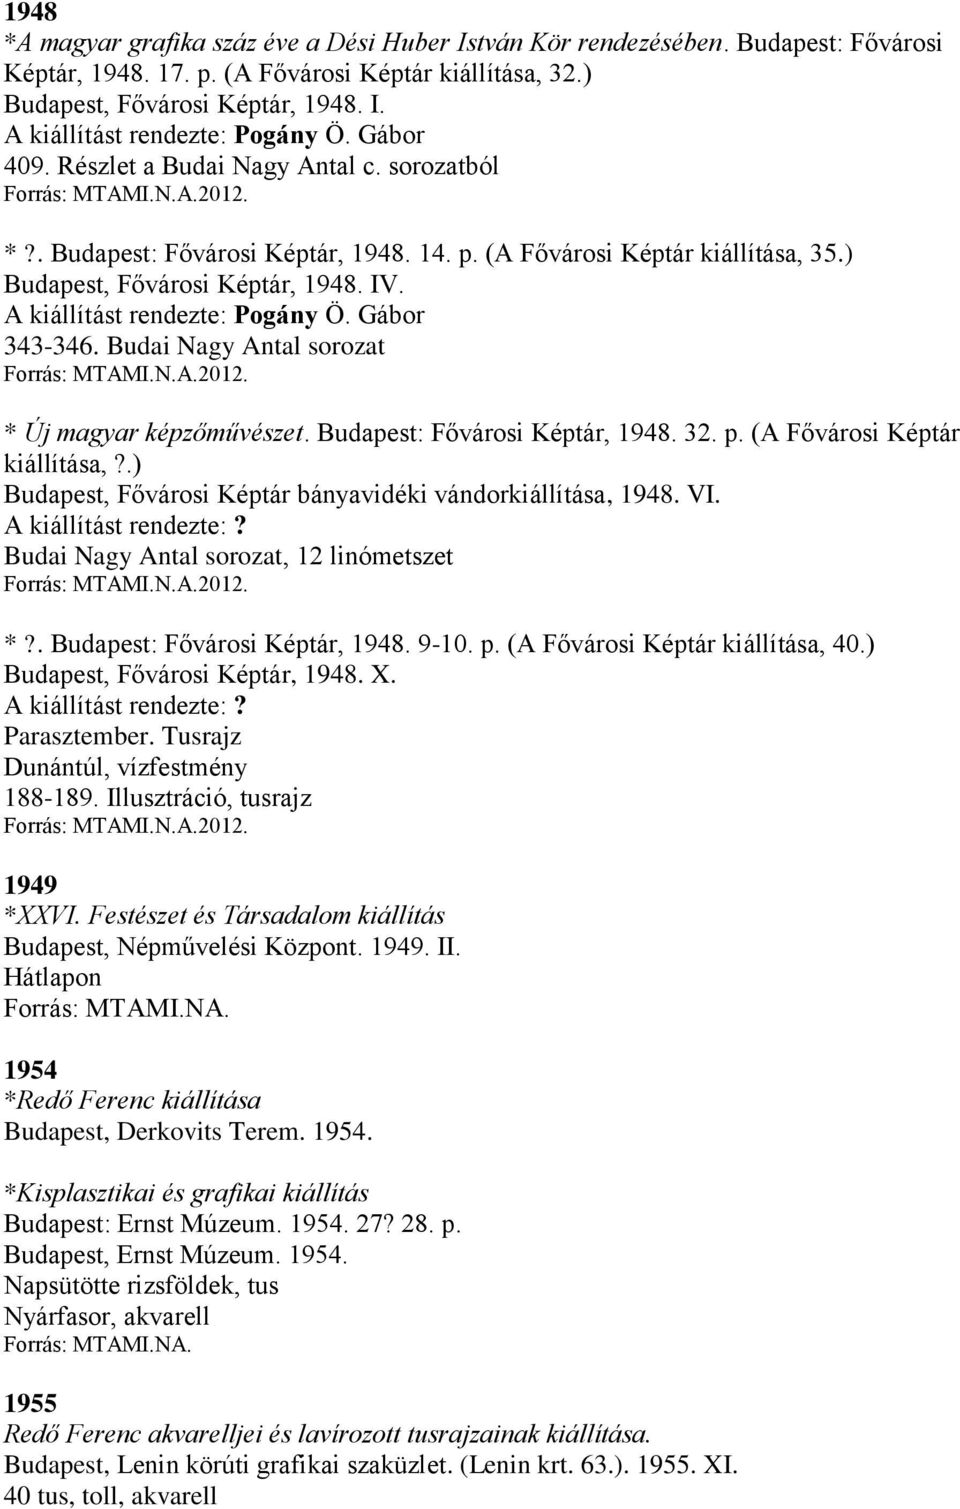 A kiállítást rendezte: Pogány Ö. Gábor 343-346. Budai Nagy Antal sorozat * Új magyar képzőművészet. Budapest: Fővárosi Képtár, 1948. 32. p. (A Fővárosi Képtár kiállítása,?